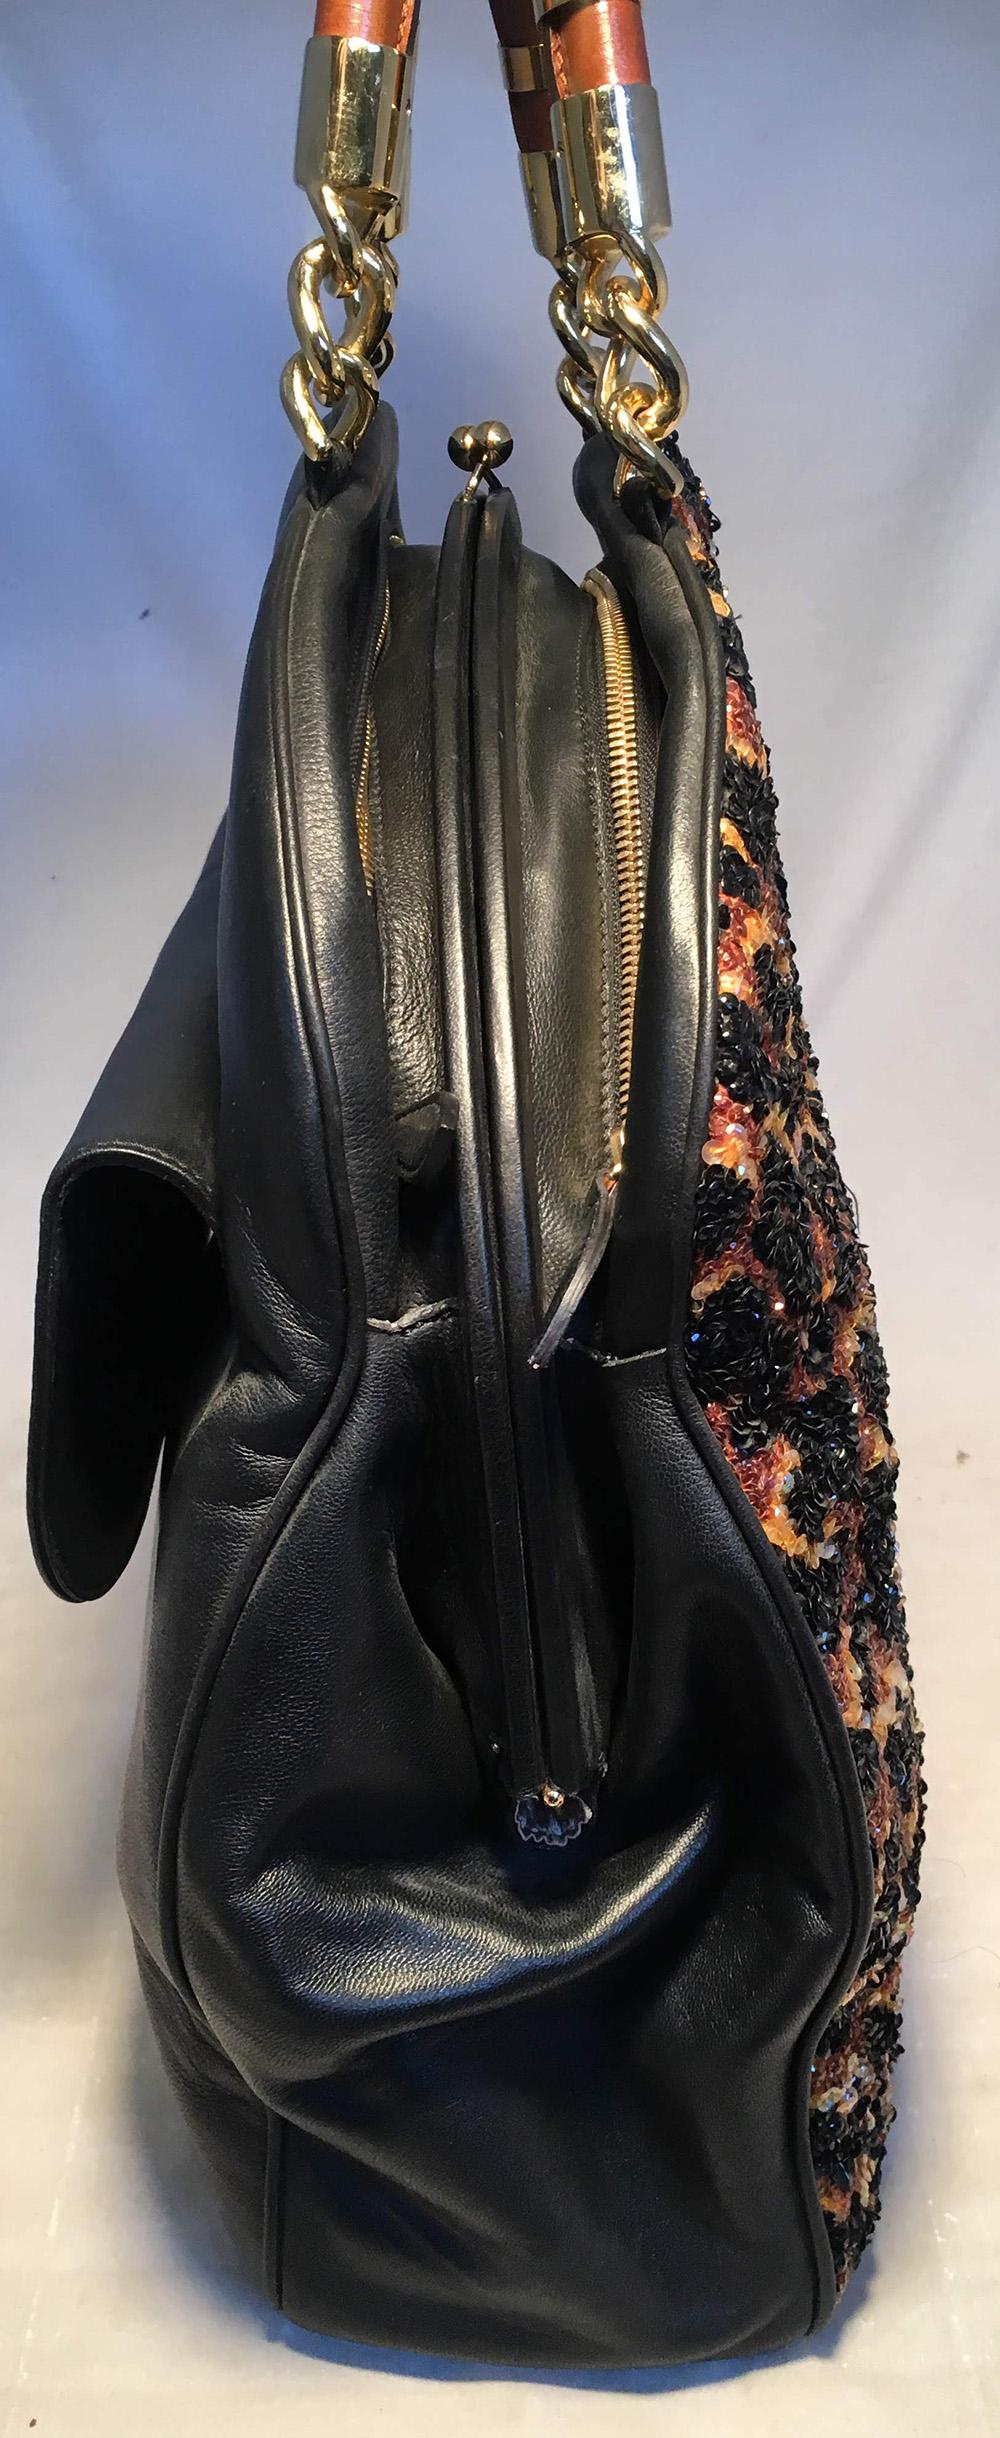 OOAK Abigail Made in Italy Contessa Leopard Beaded Gown Top Handle Leather Tote. Fourre-tout à poignée supérieure unique, fabriqué à la main à partir d'une robe perlée ayant appartenu à une contessa italienne. Le devant perlé de l'imprimé léopard à